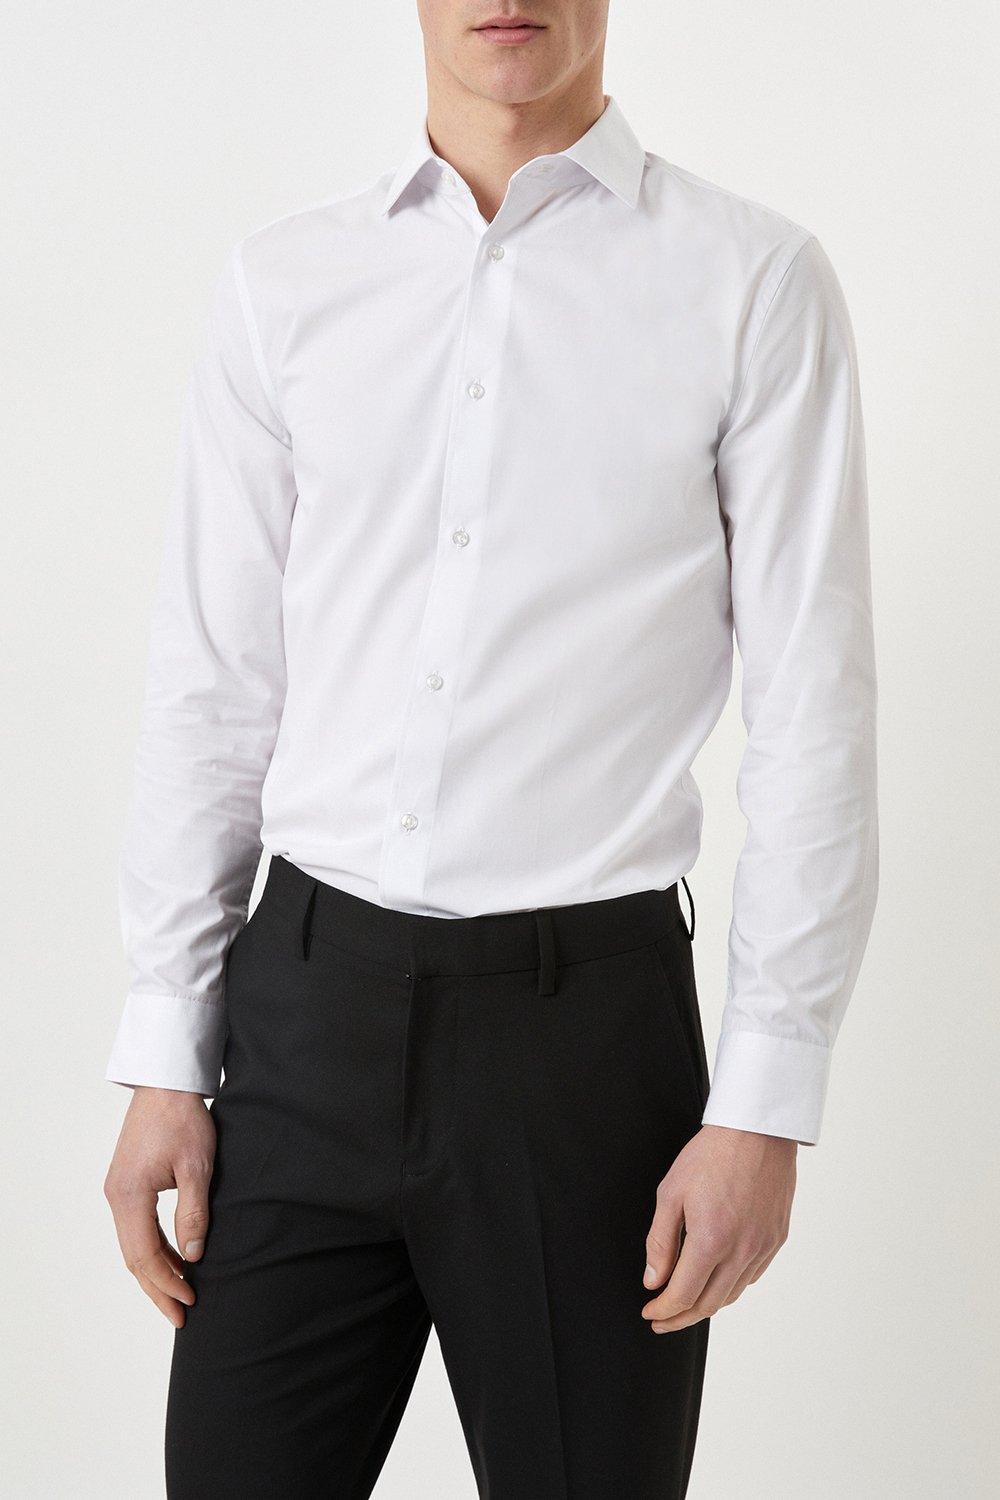 Mens Slim Fit White Essential Formal Shirt